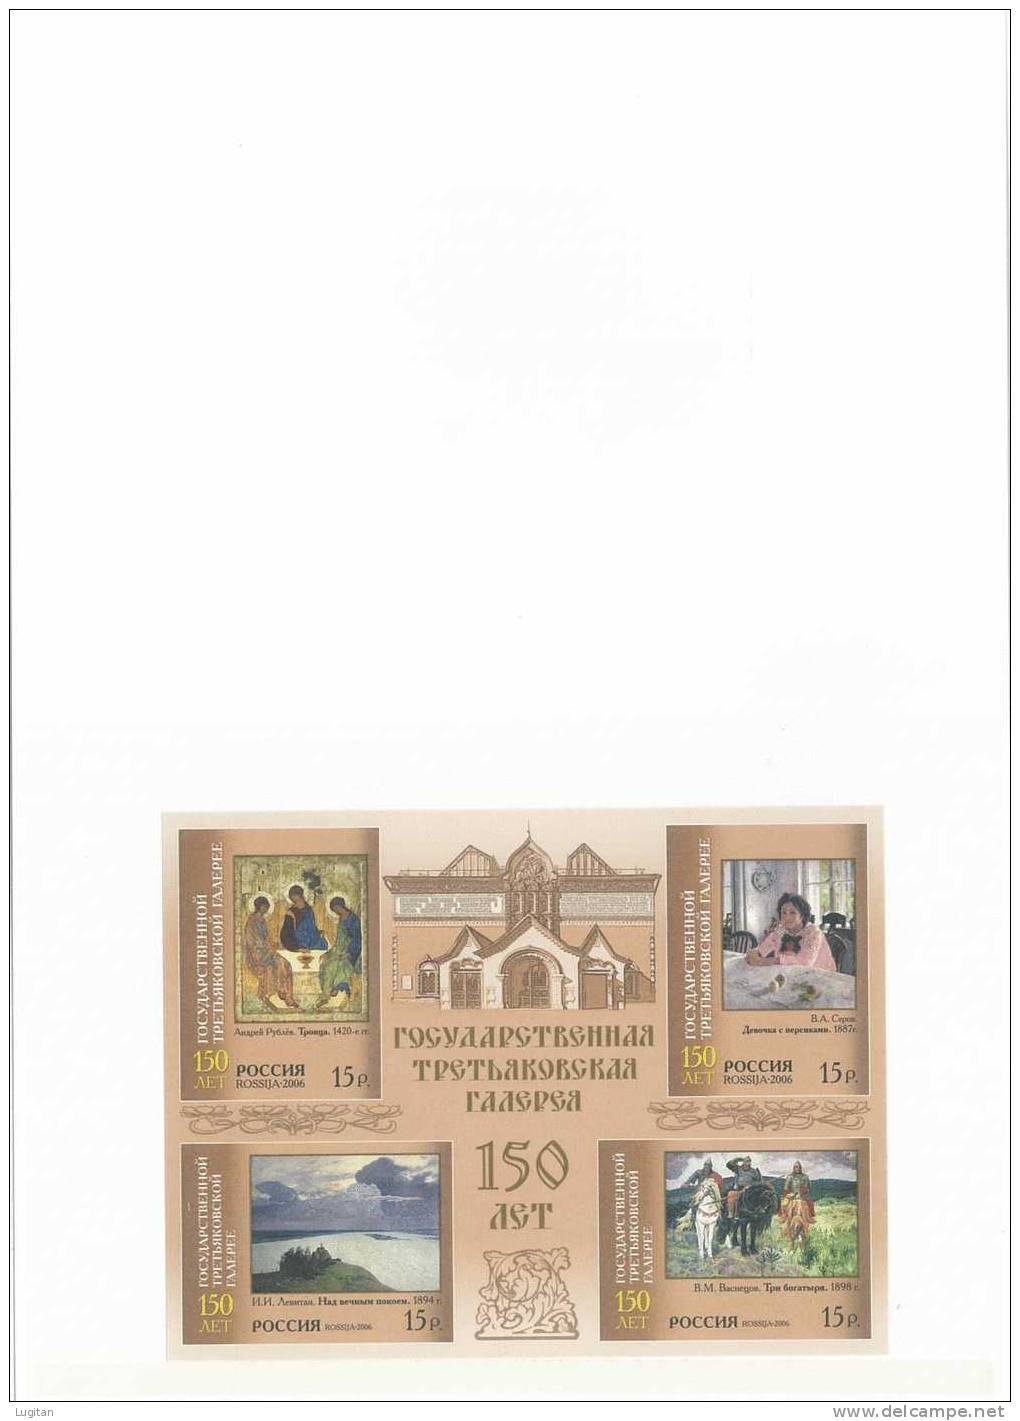 Filatelia - FOLDER A BASSA TIRATURA - 150° ANNIVERSARIO DELLA GALLERIA NAZIONE TRETJAKOW DI MOSCA  ANNO 2006 - RARISSIMO - Used Stamps